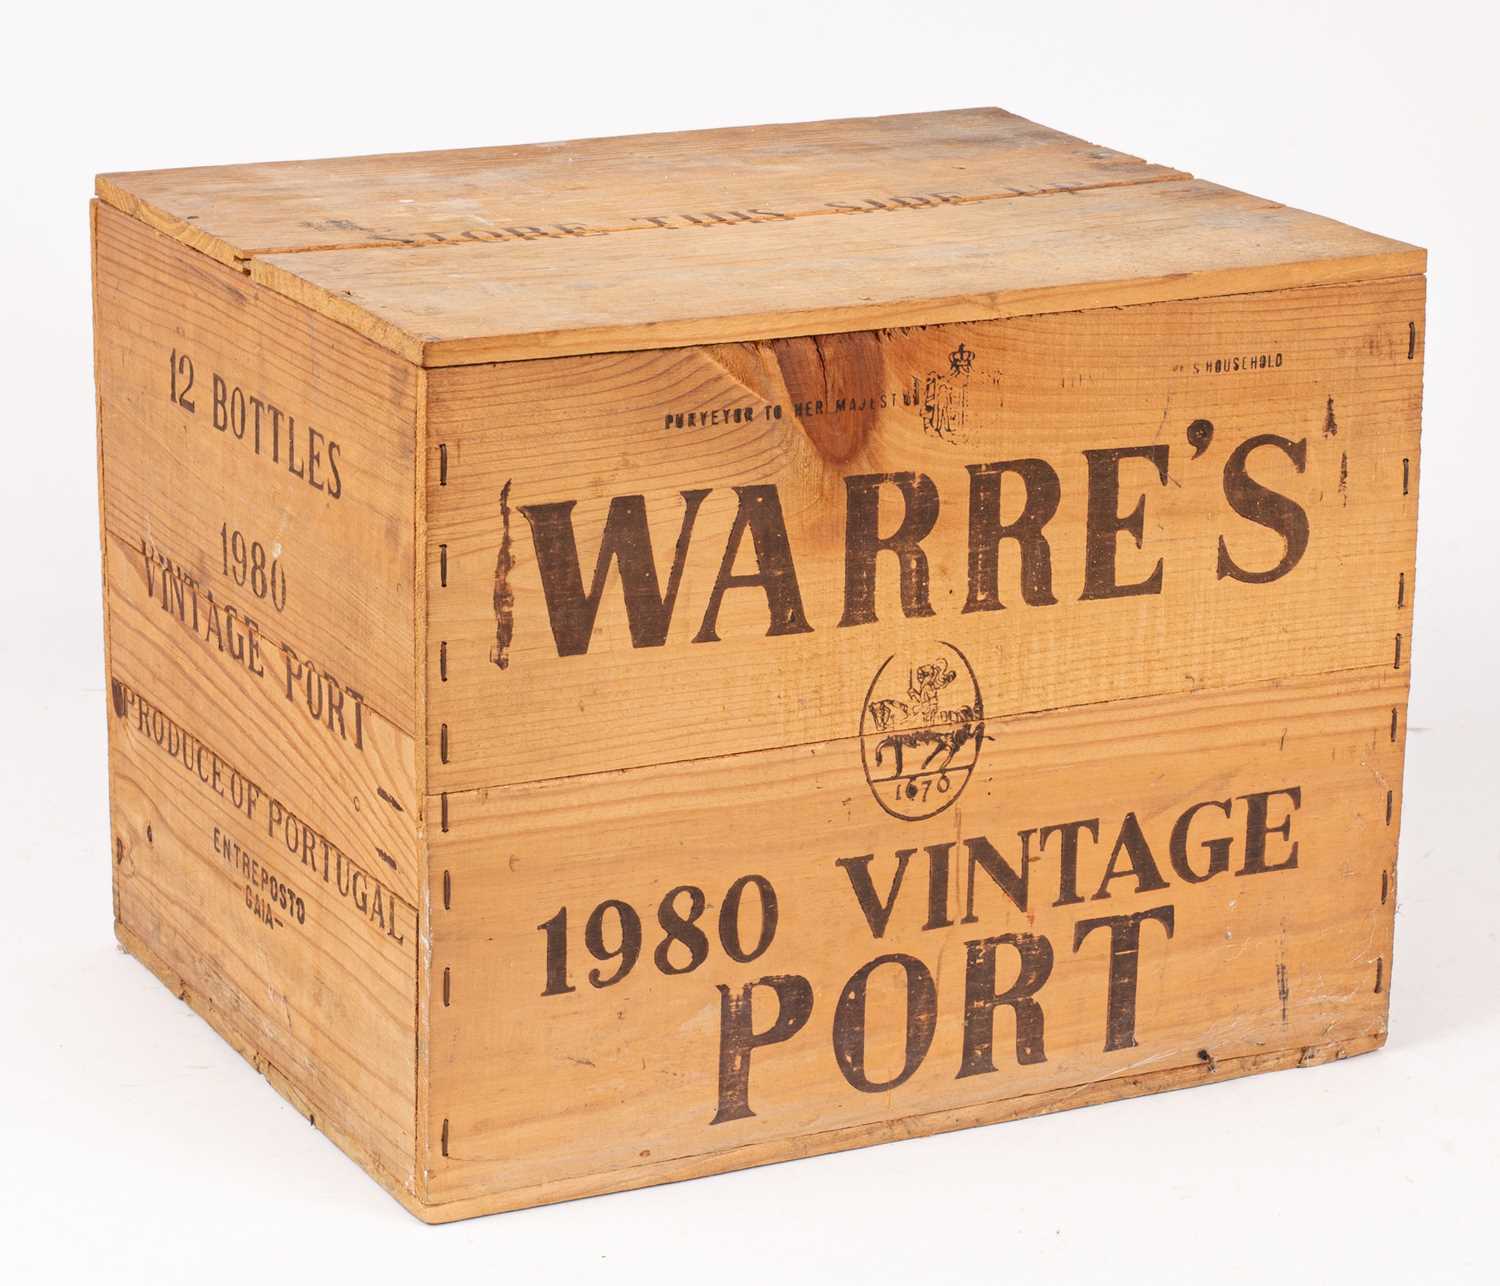 Lot 311 - Vintage Port: Warre's 1980